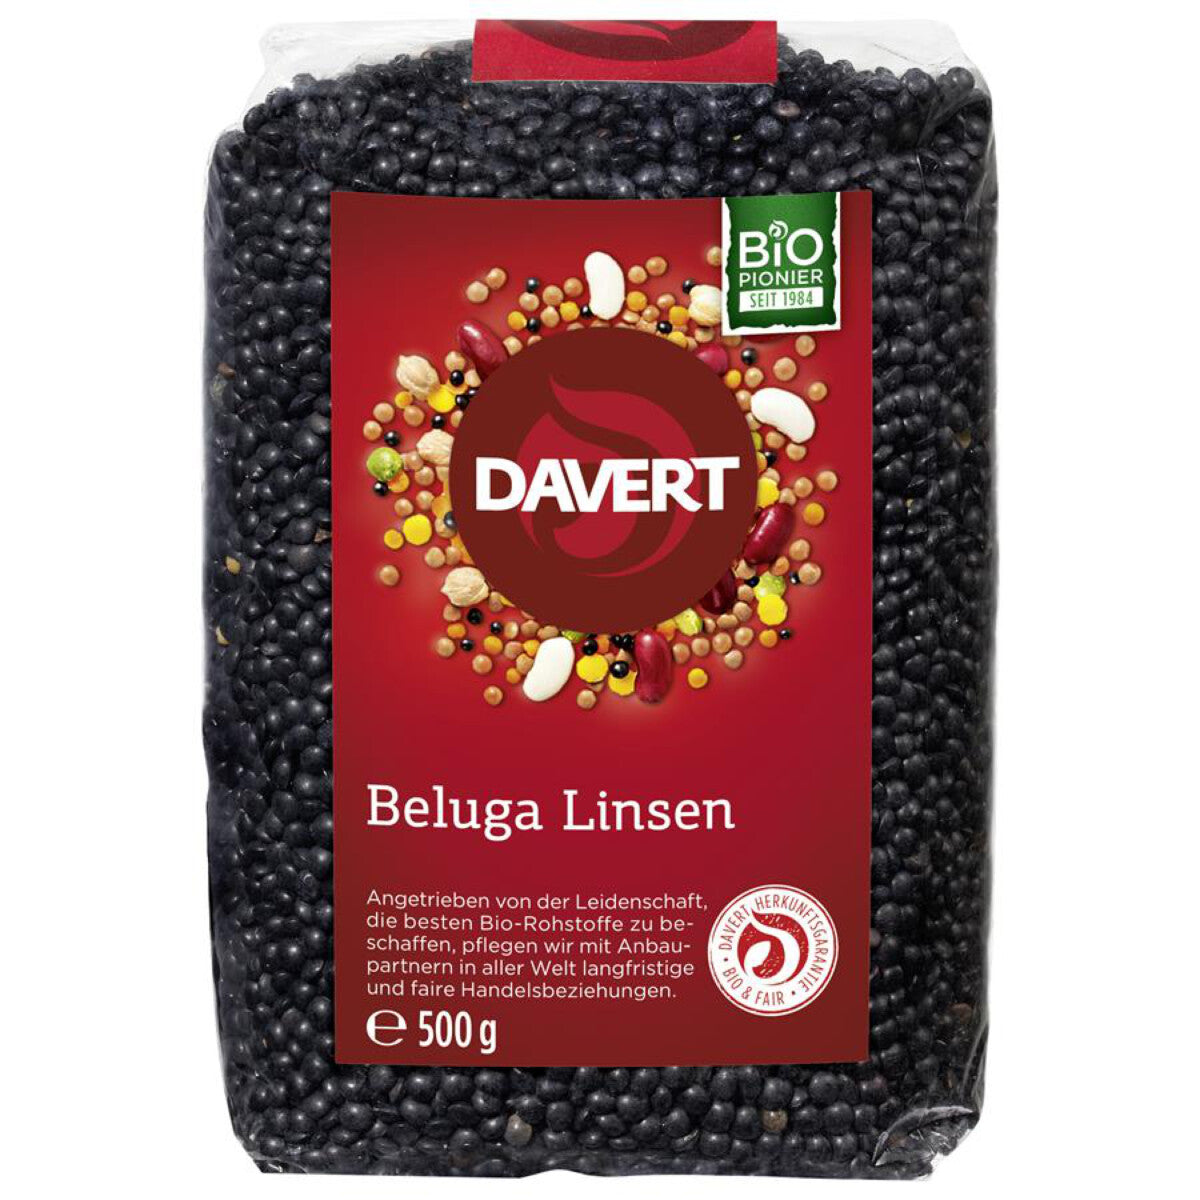 DAVERT Beluga Linsen - 500 g